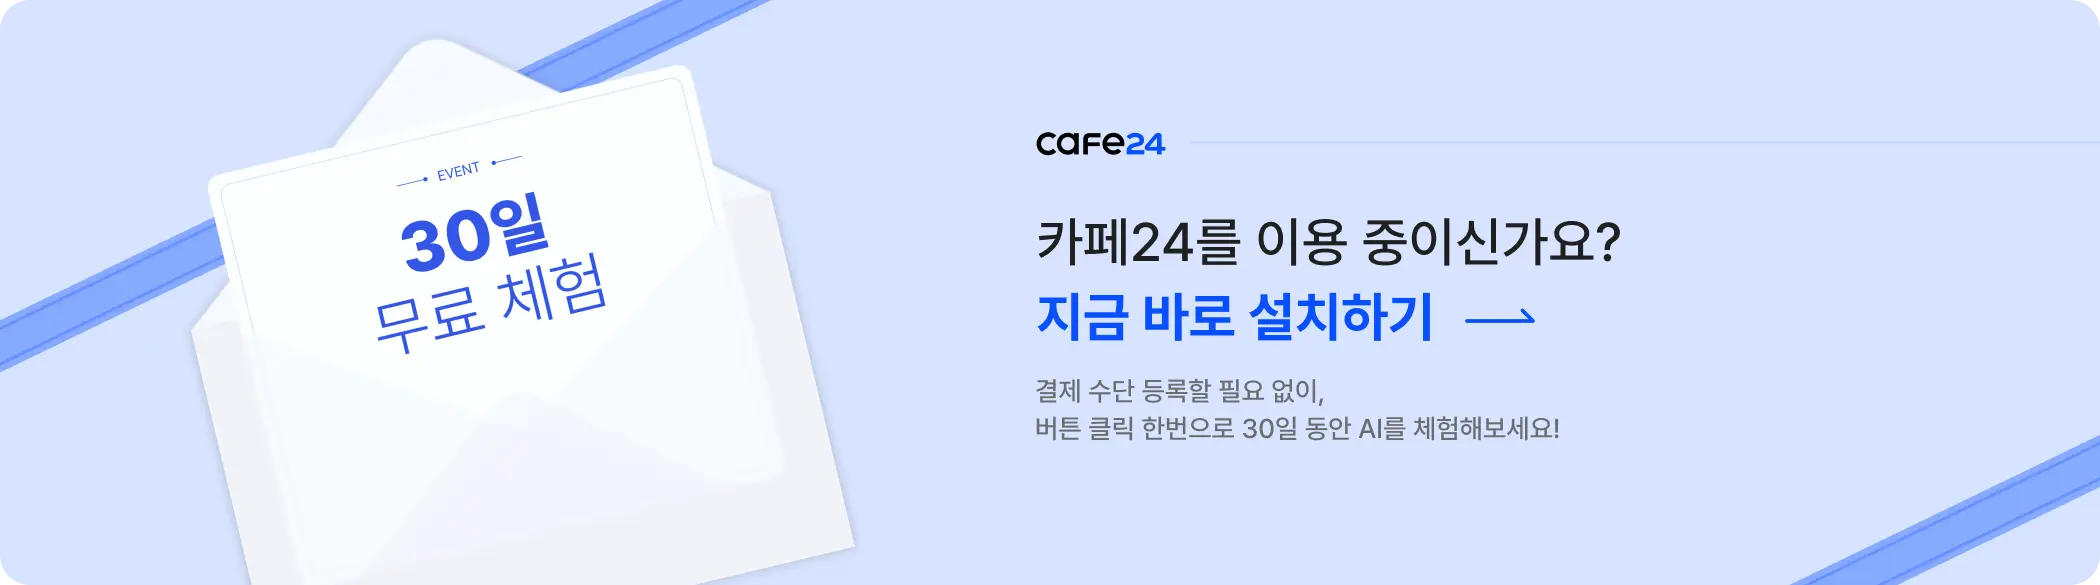 cafe 24 logo image